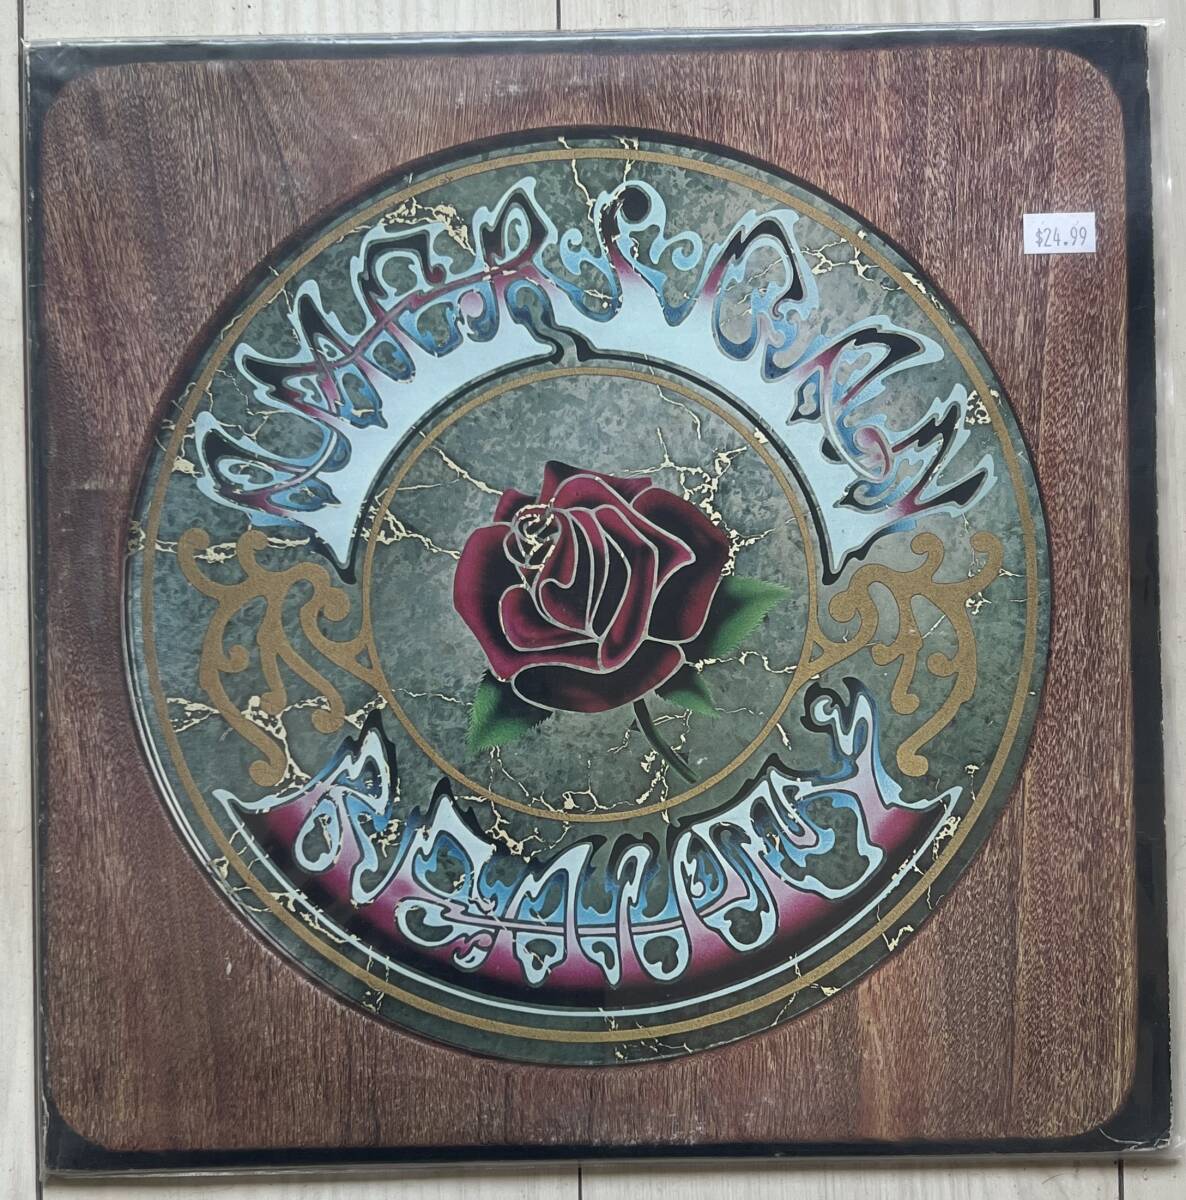 【US盤】Grateful Dead American Beauty 1975年 WS 1893 70年の5thアルバム グレイトフル・デッド_画像1